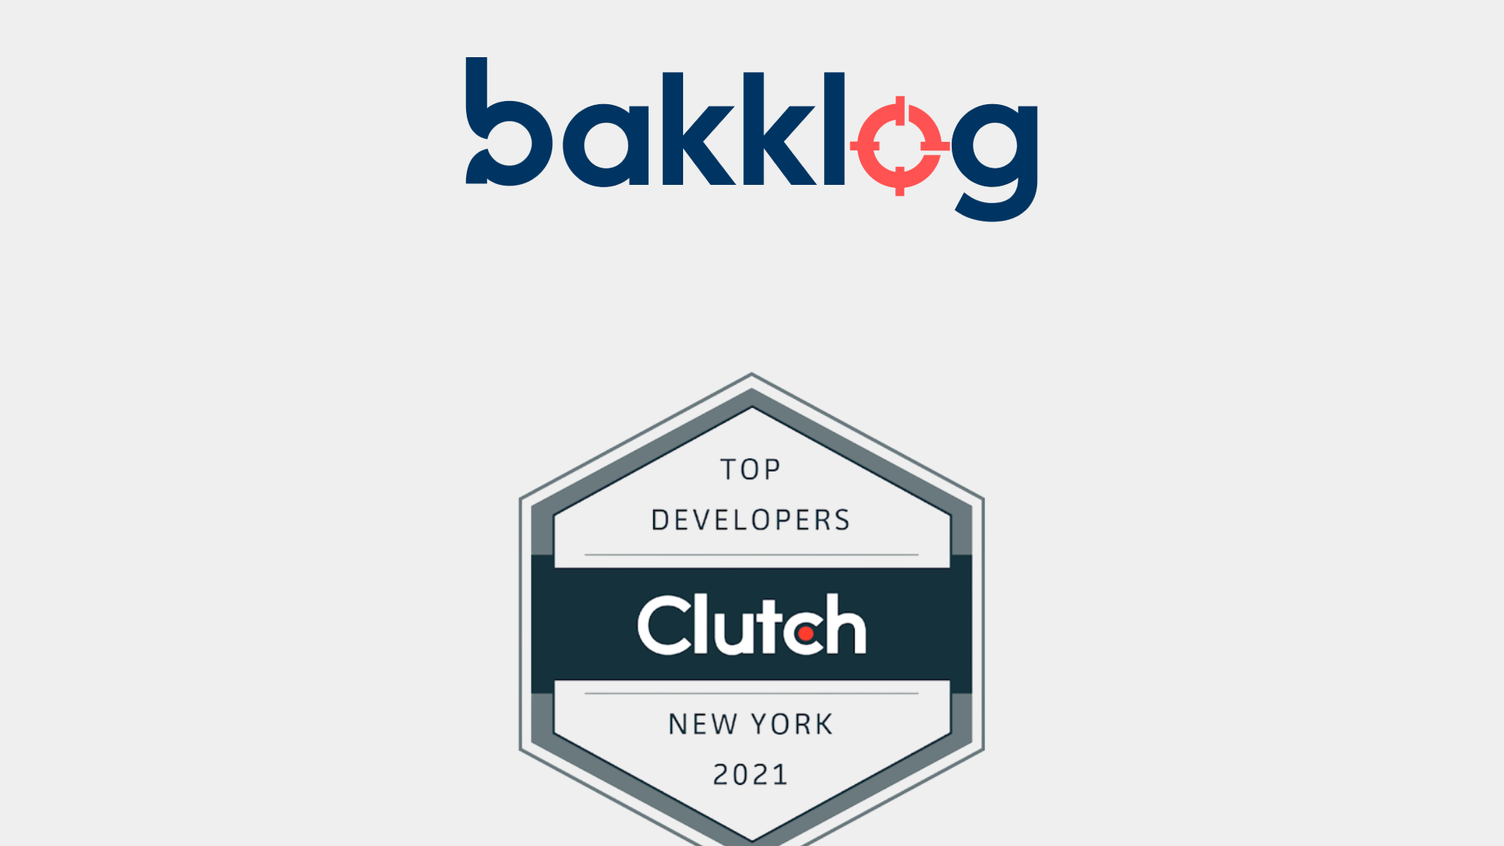 Clutch benoemt Bakklog als een van de beste softwareontwikkelaars in New York 2021